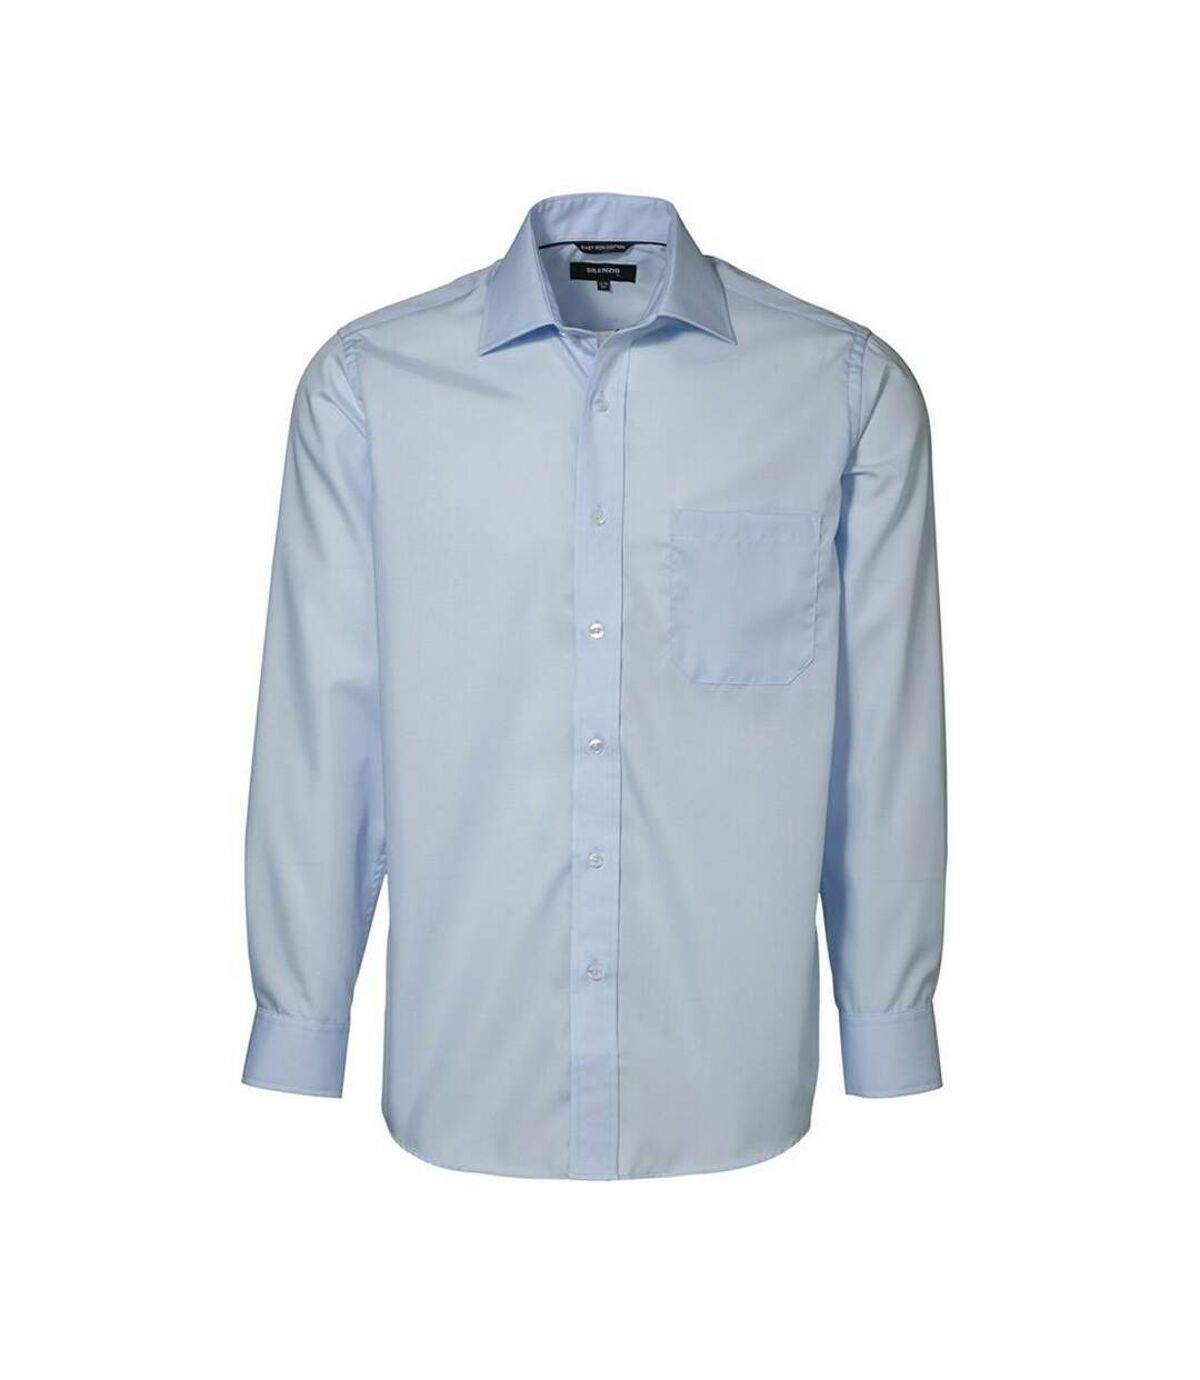 ID - Chemise à manches longues 100% coton (coupe régulière) - Homme (Bleu clair) - UTID334